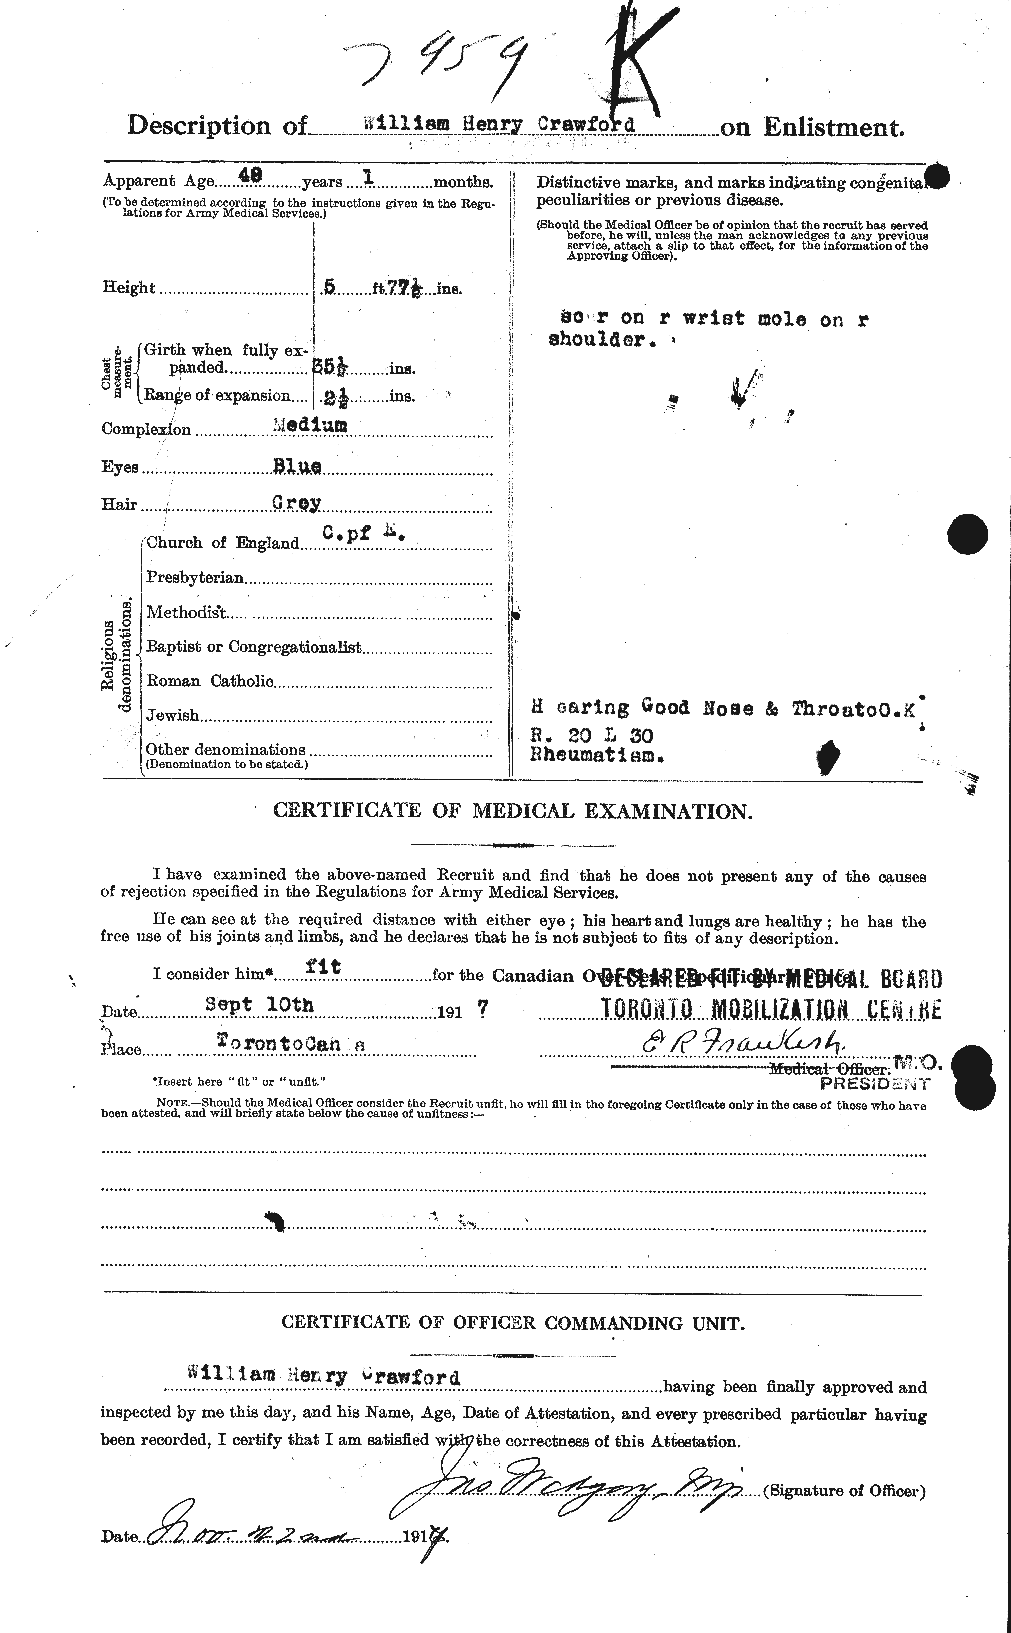 Dossiers du Personnel de la Première Guerre mondiale - CEC 061137b